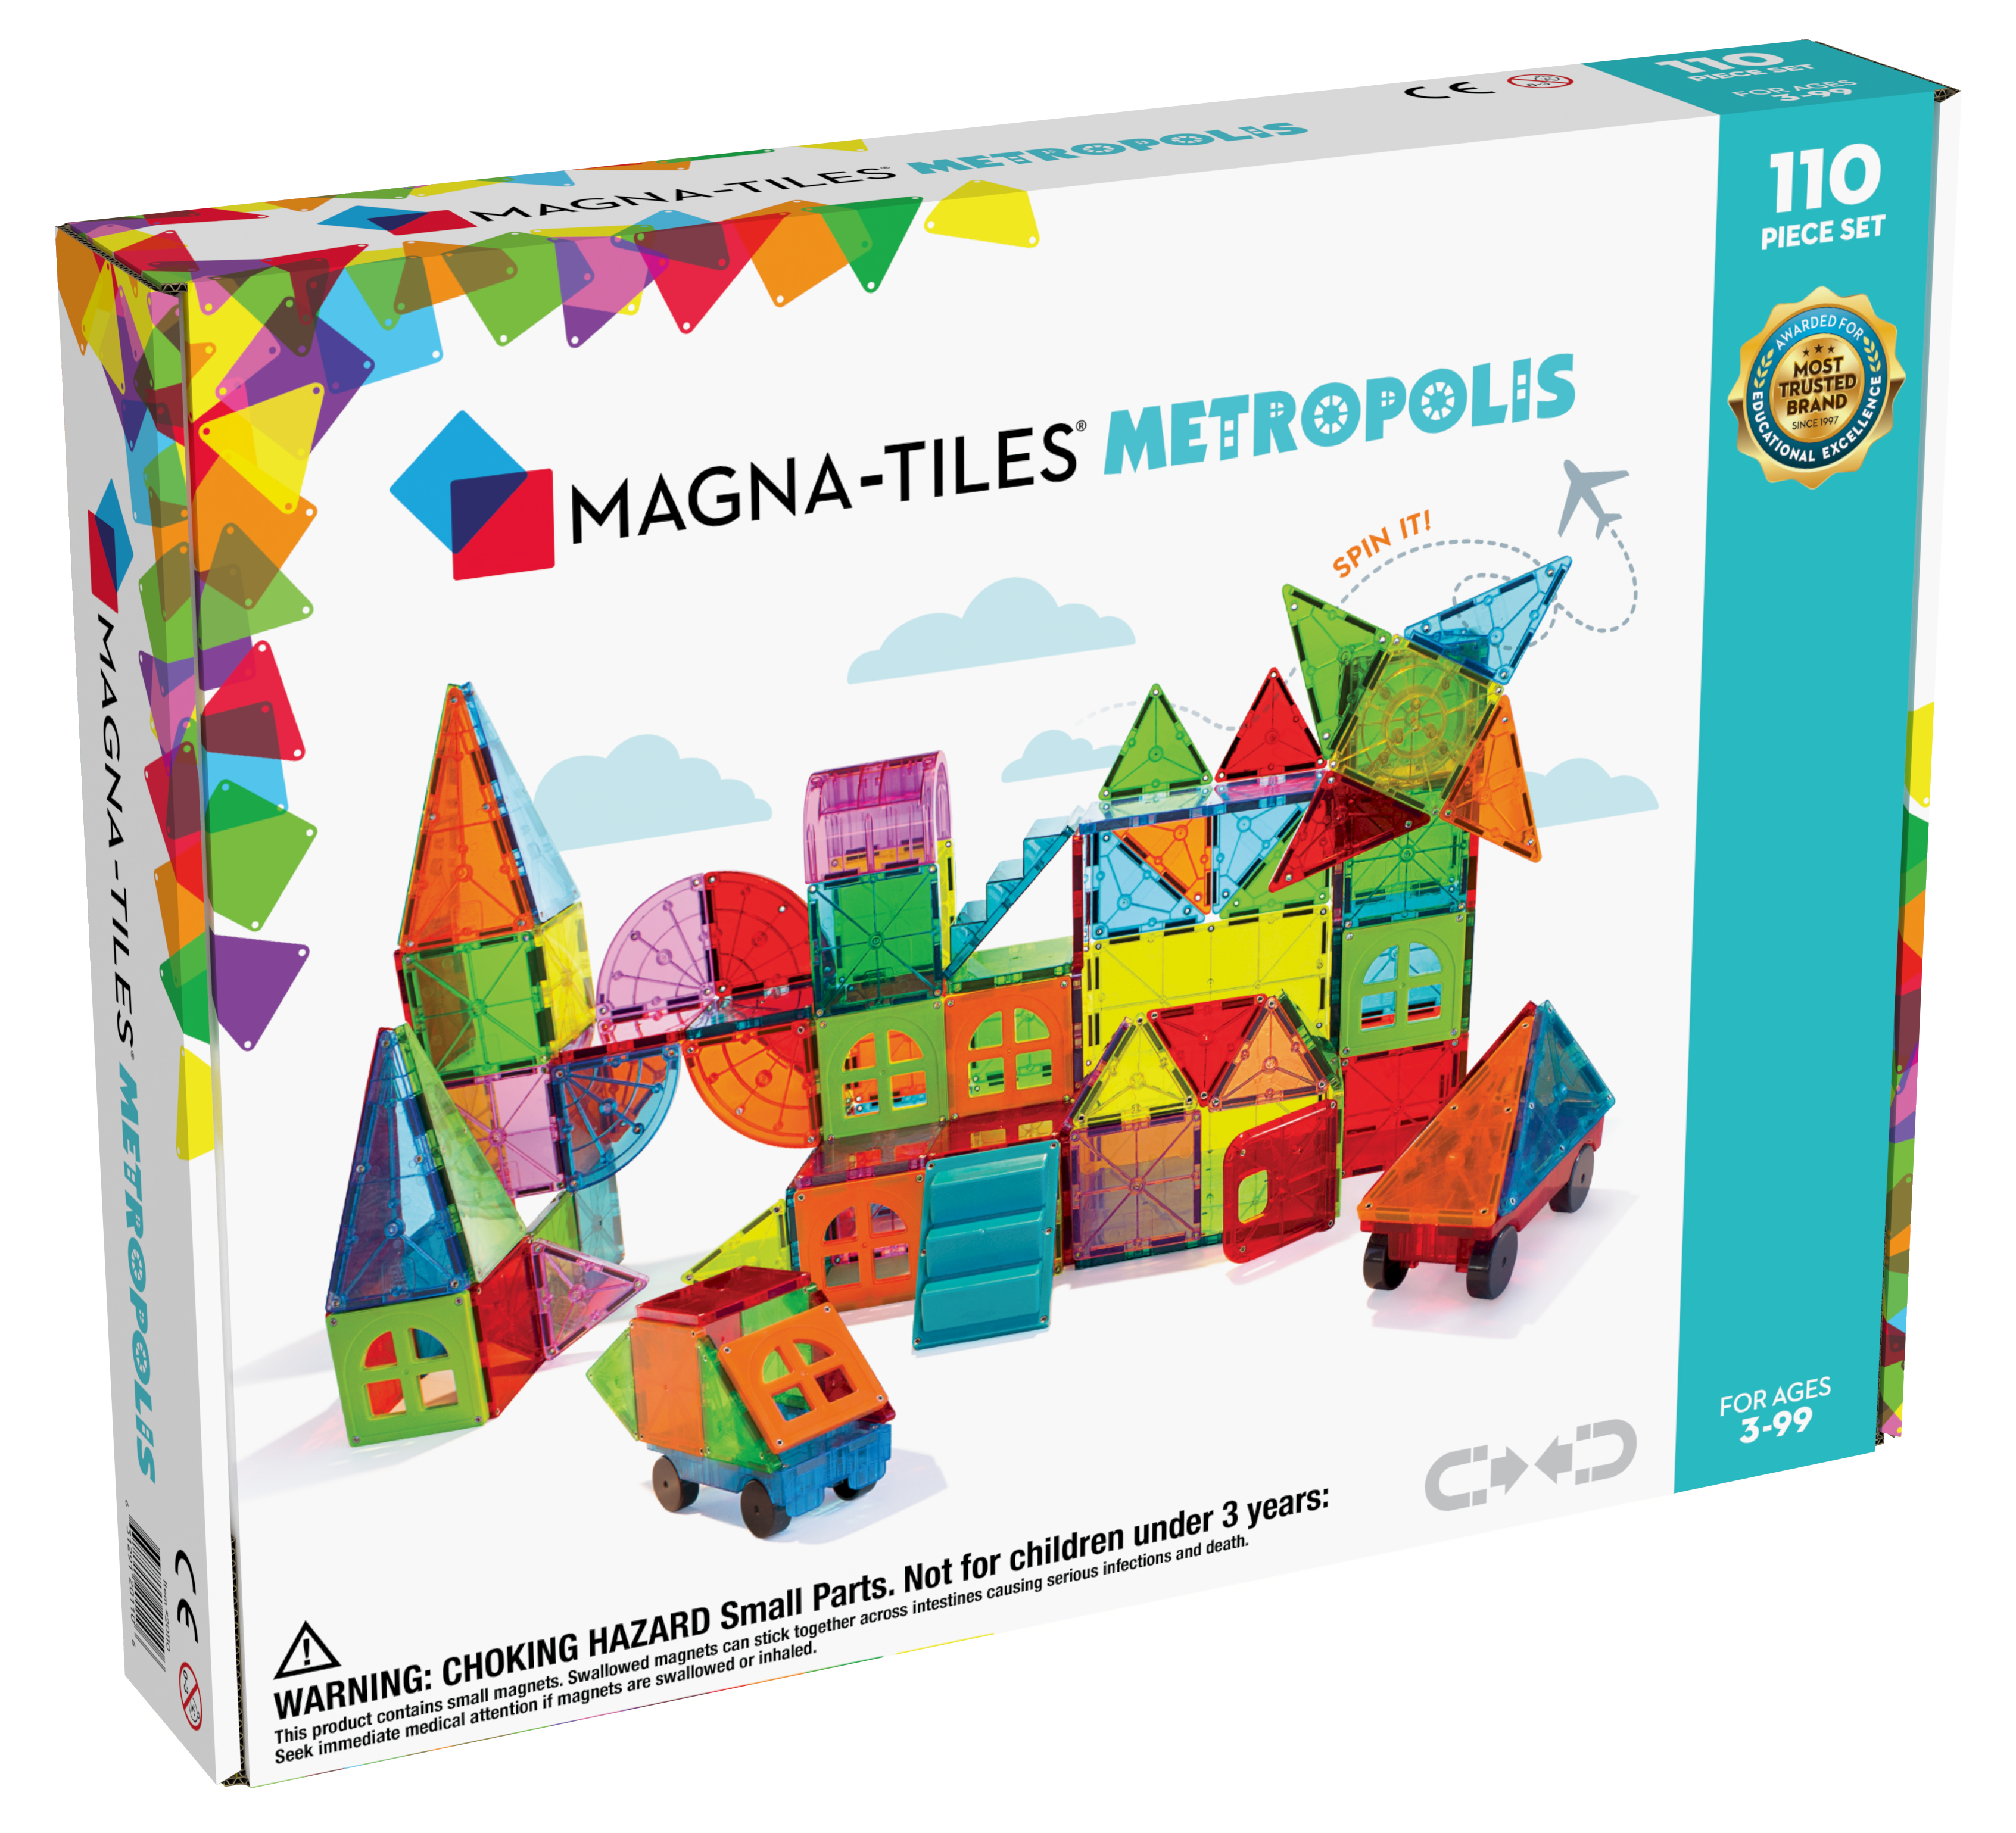 Magna-Tiles Metropolis 110-Piece Set 